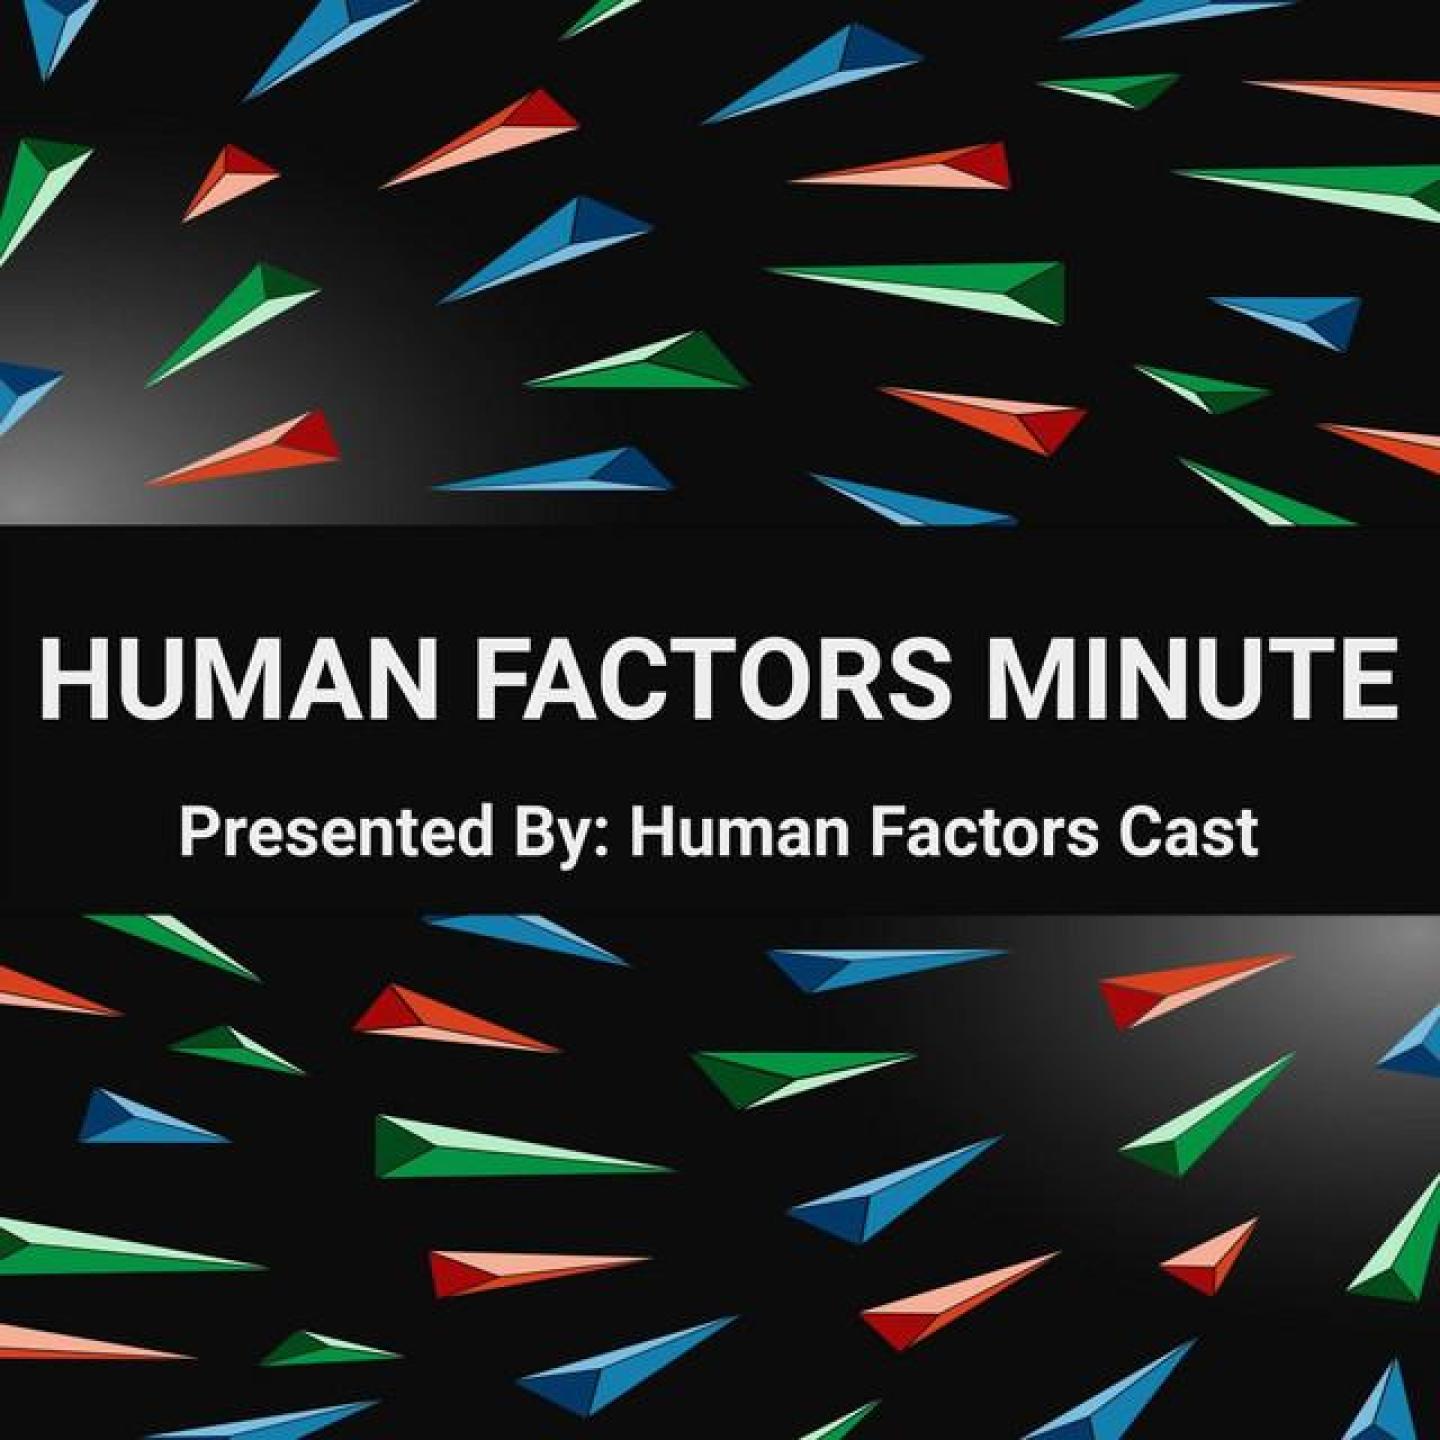 Human Factors Minute Trailer - Human Factors Minute